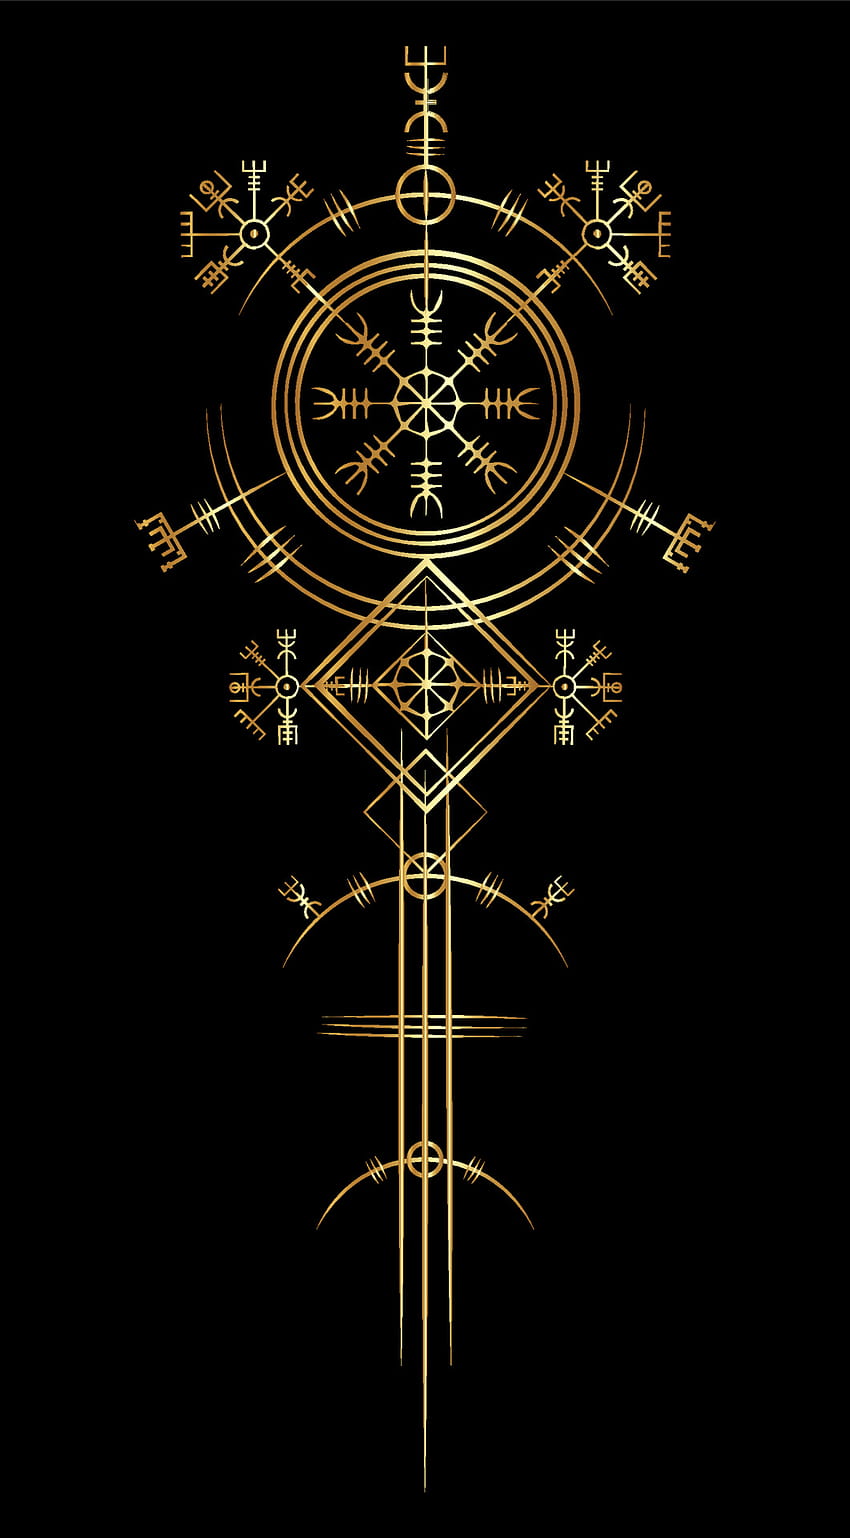 Art deco viking kuno ajaib, kompas navigasi Gold Vegvisir kuno. Viking menggunakan banyak simbol sesuai dengan mitologi Norse, banyak digunakan dalam masyarakat Viking. Logo ikon tanda esoterik Wiccan 3727193 Vektor, simbol kuno wallpaper ponsel HD